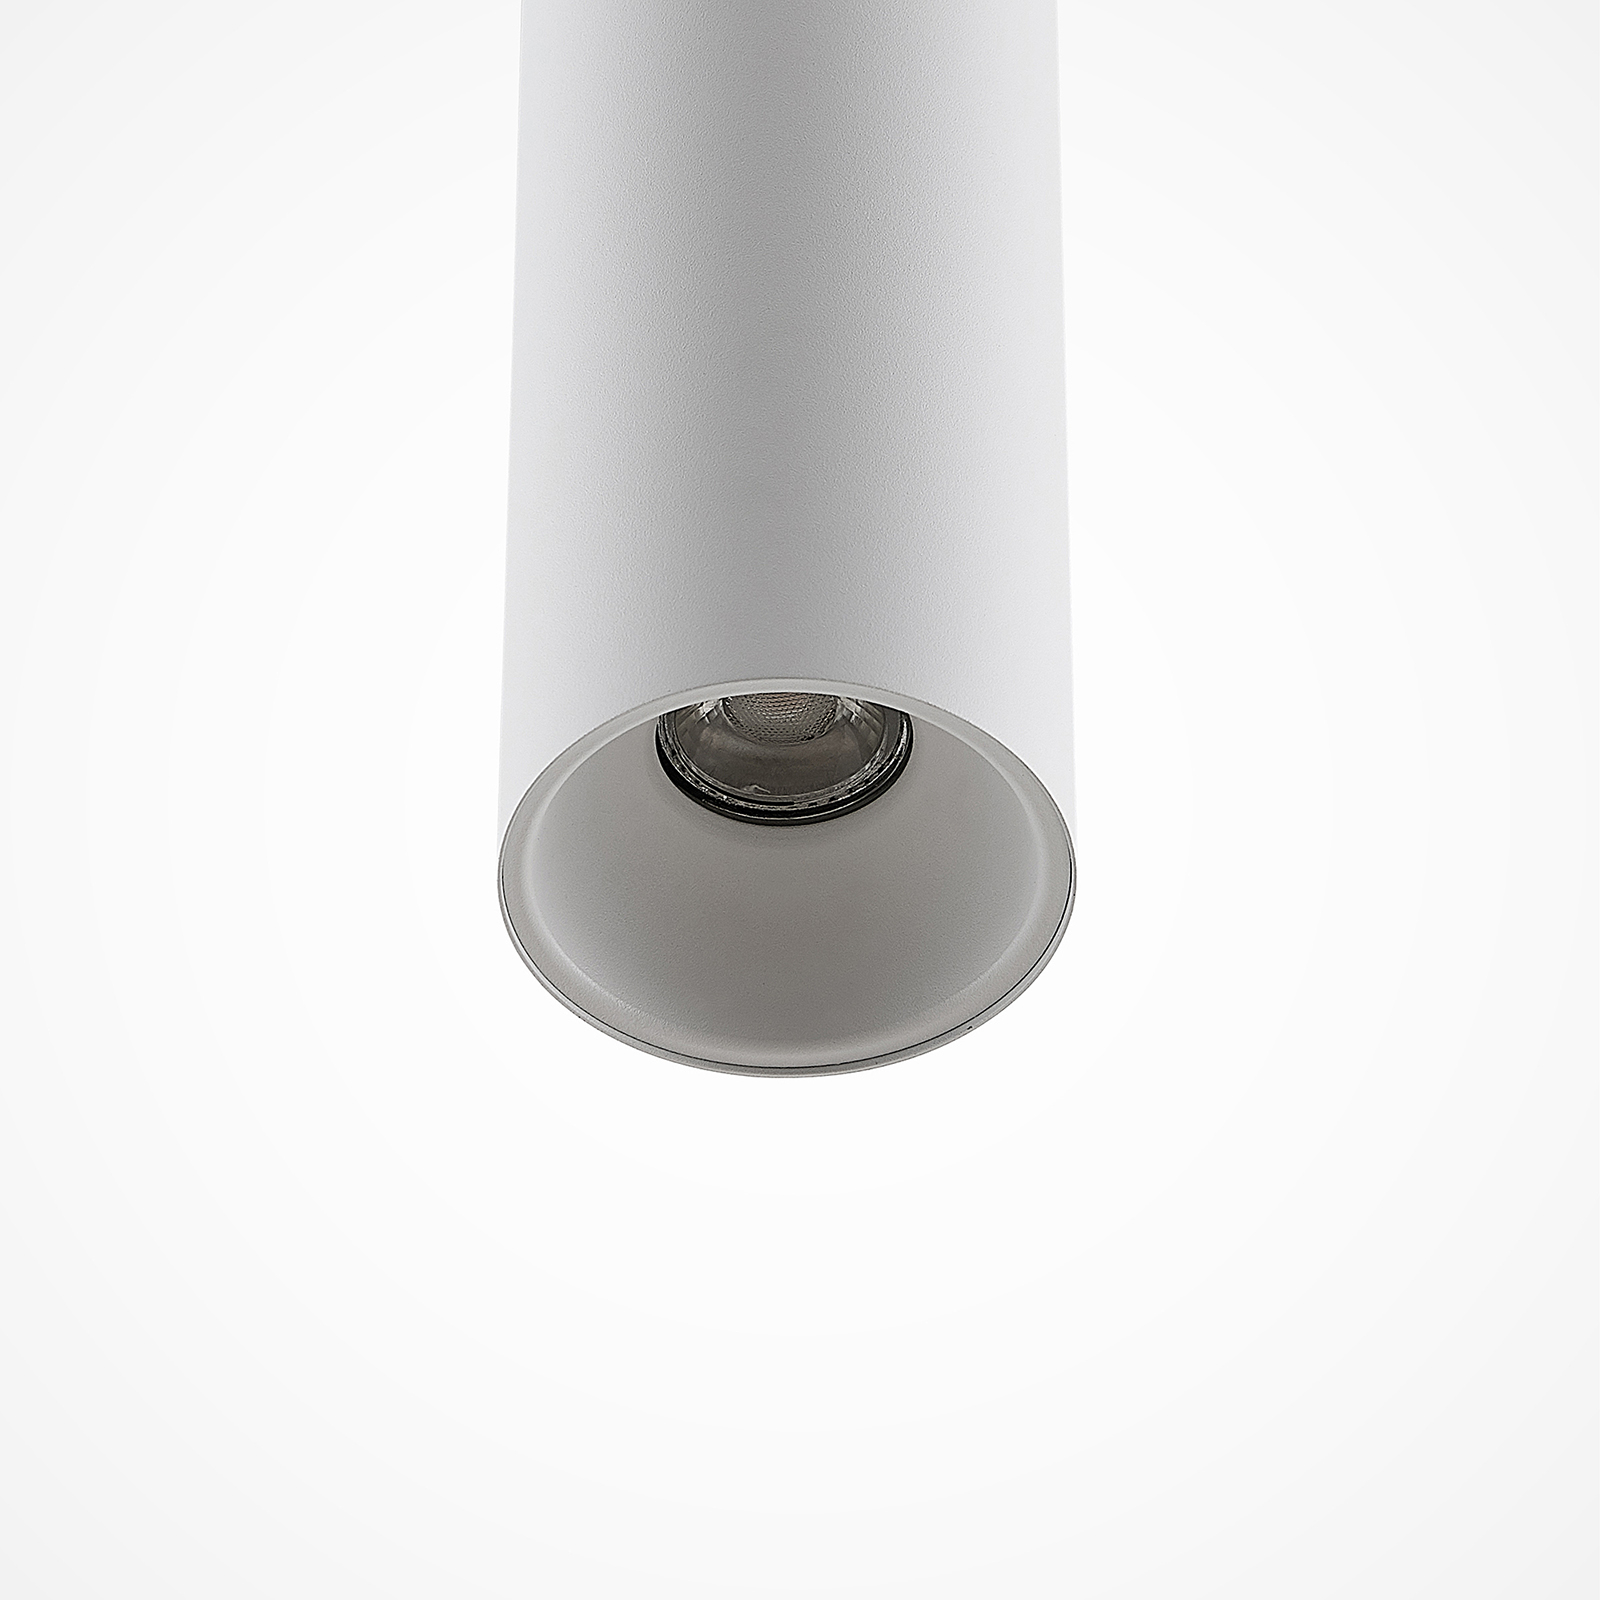 Arcchio Marilena hængelampe i cylinderform, hvid